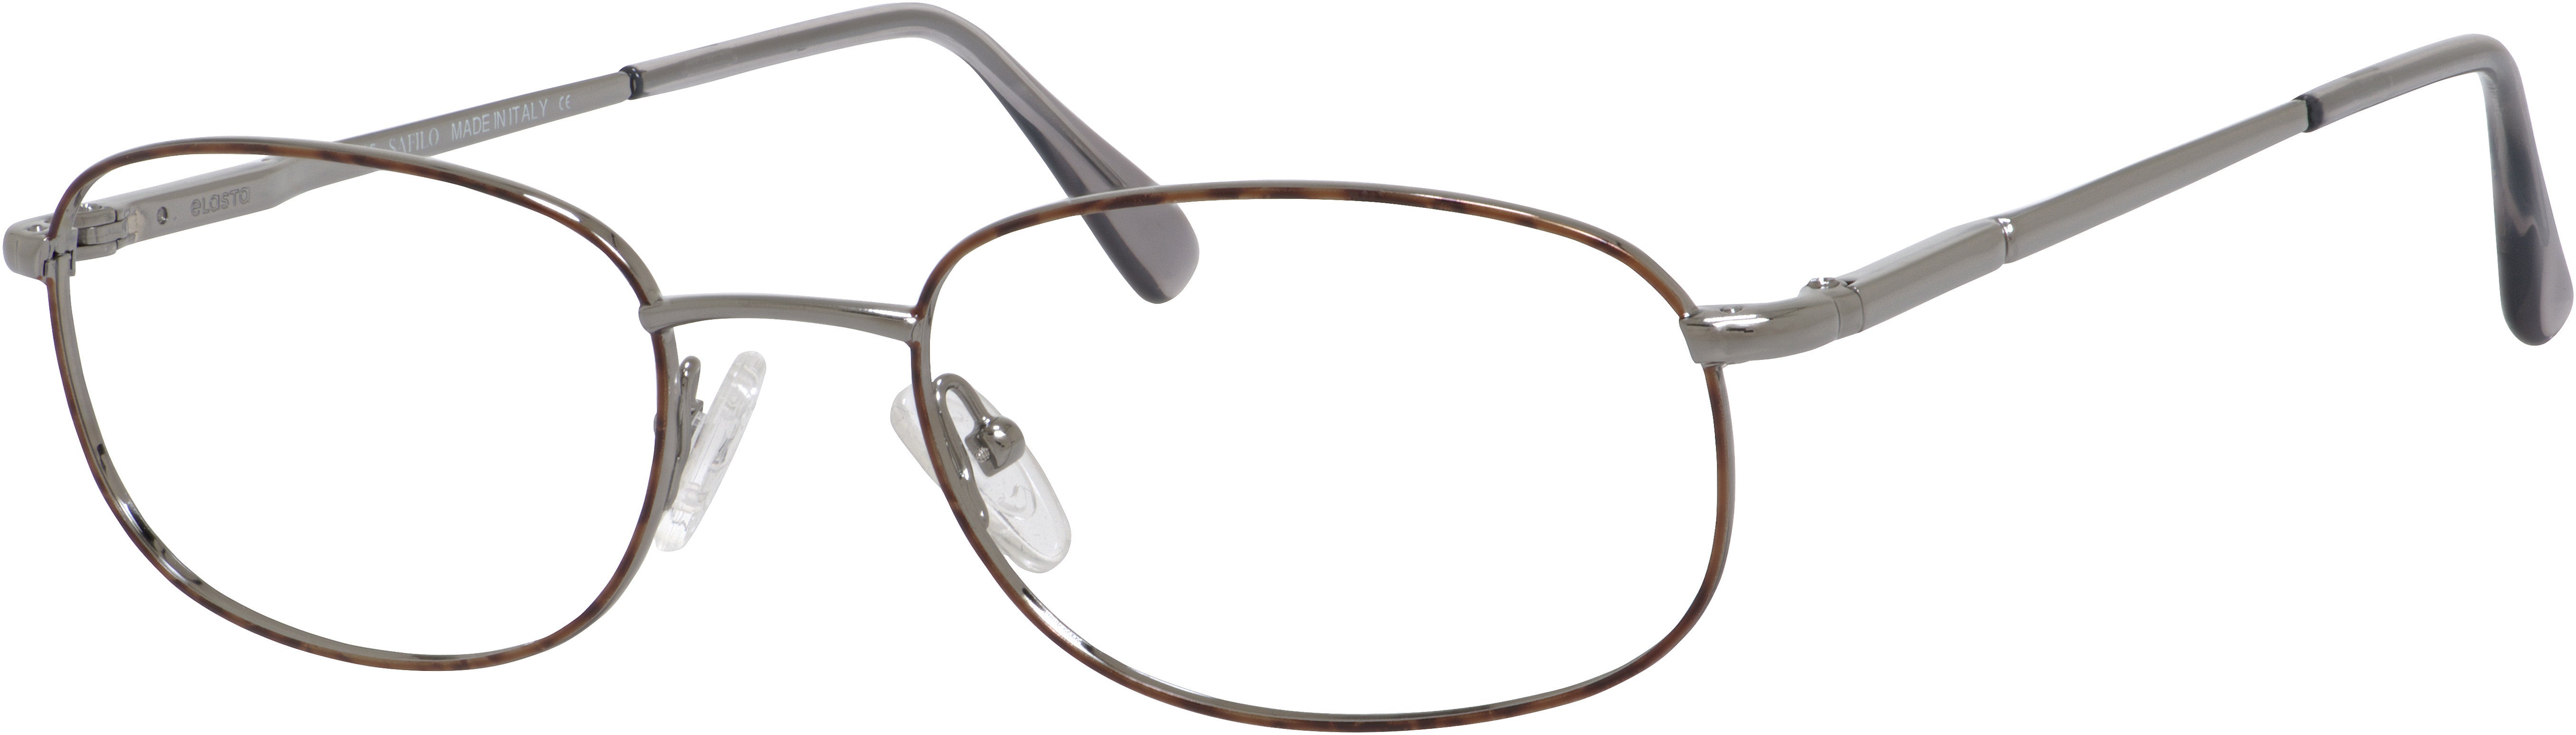  Elasta 7058 Rectangular Eyeglasses 0H20-0H20  Pewter Havana (00 Demo Lens)